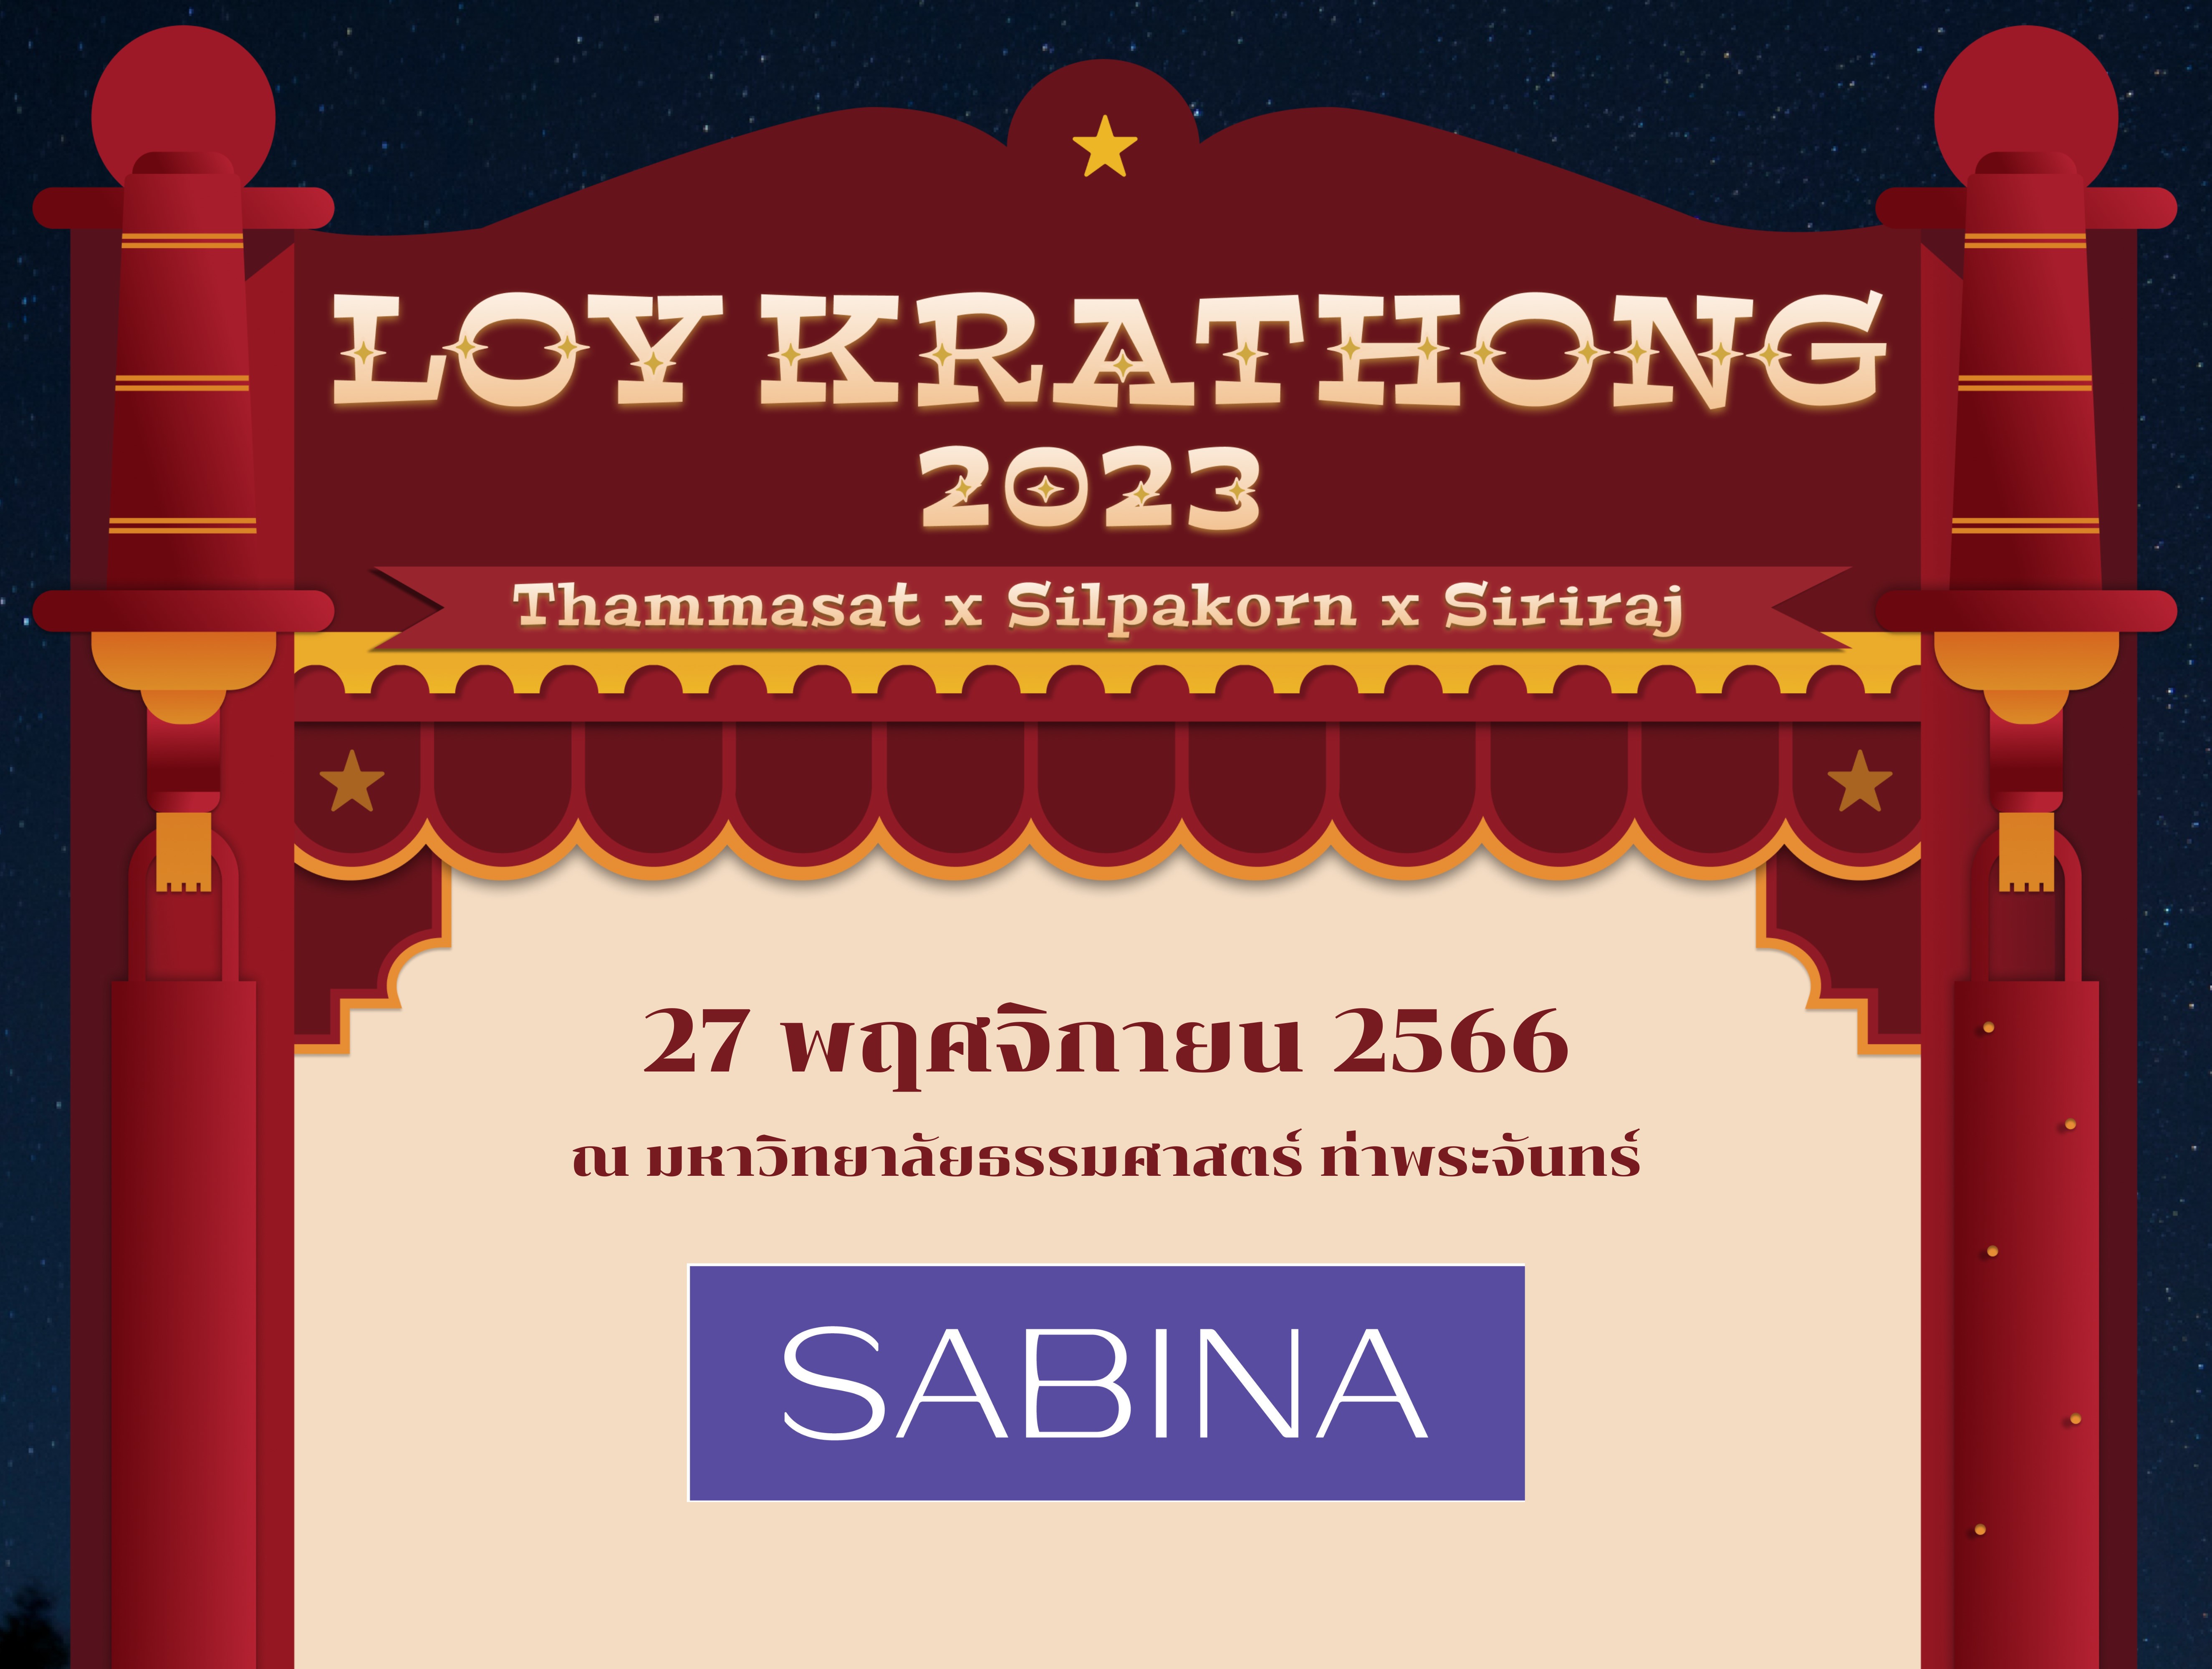 บริษัท ซาบีน่า ฟาร์อีสท์ จำกัด สนับสนุนกิจกรรม Tha Prachan Loy krathong 2023 กิจกรรมลอยกระทงประจำปี 2566